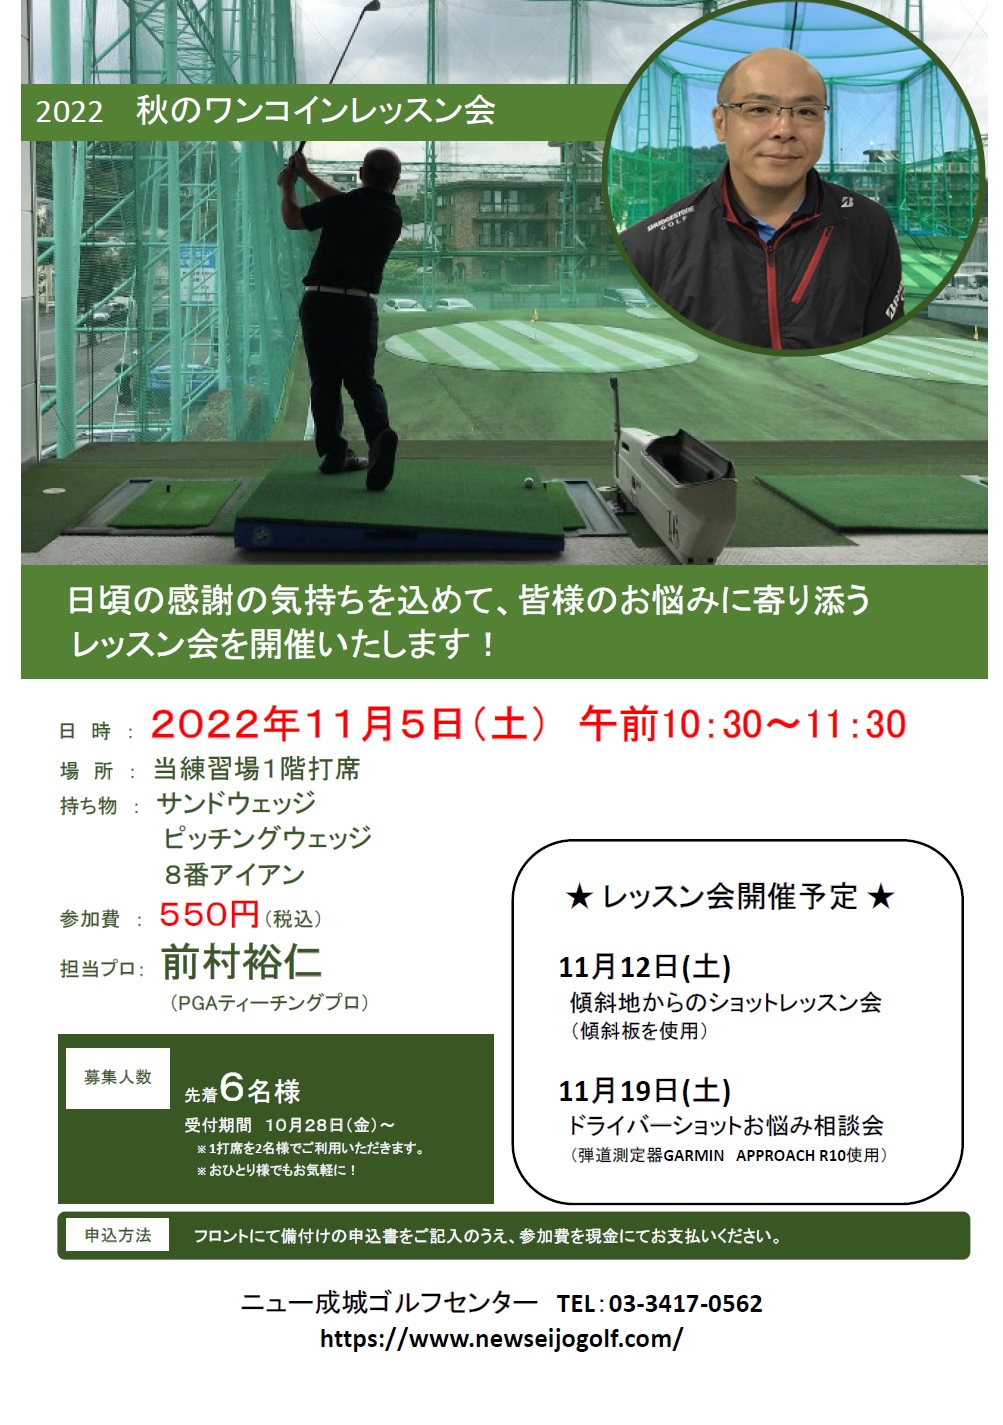 レッスンは世田谷・ゴルフ練習場・ニュー成城ゴルフセンターでわかりやすく楽しく学べます